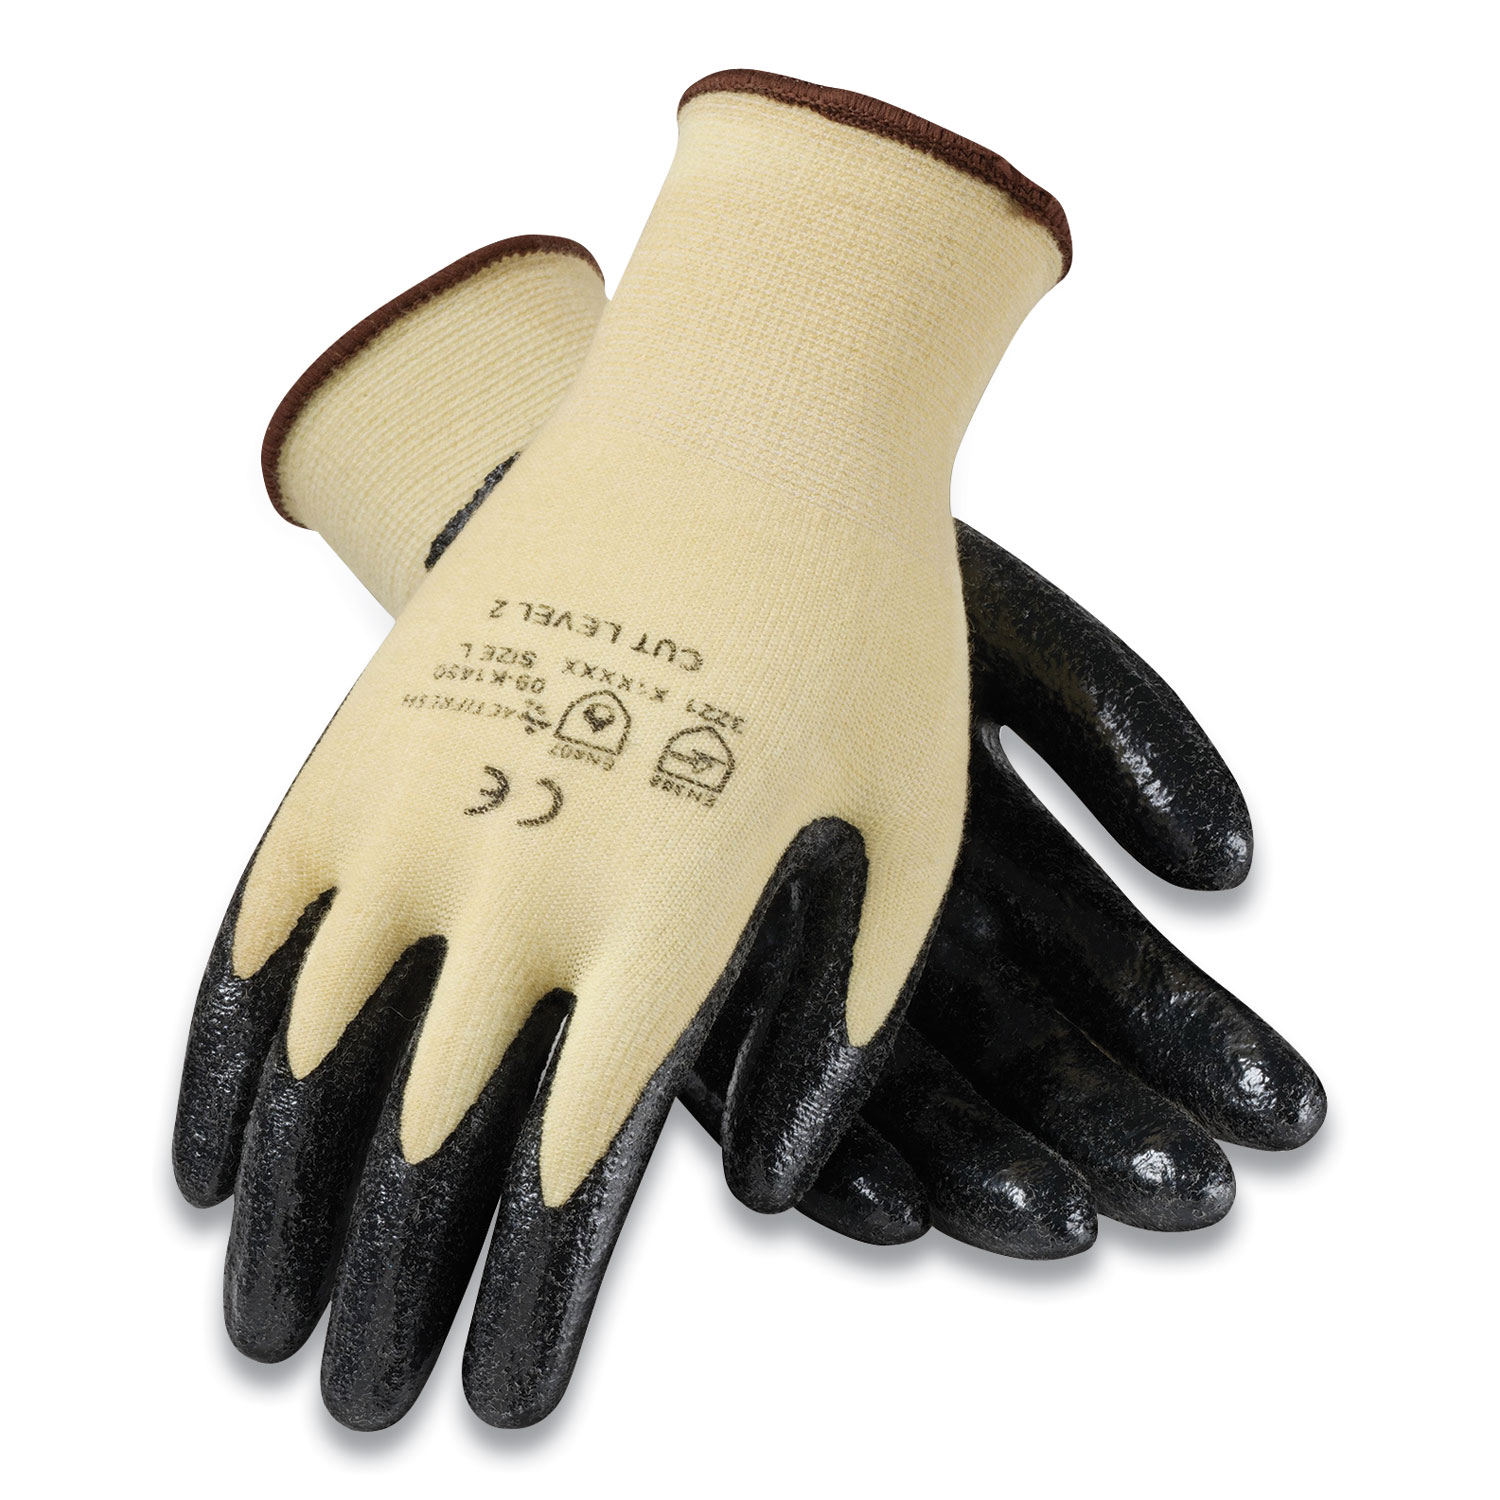  G-Tek 09-K1450/M KEV Seamless Knit Kevlar Gloves, Medium, Yellow/Black, 12 Pairs (PID179393) 